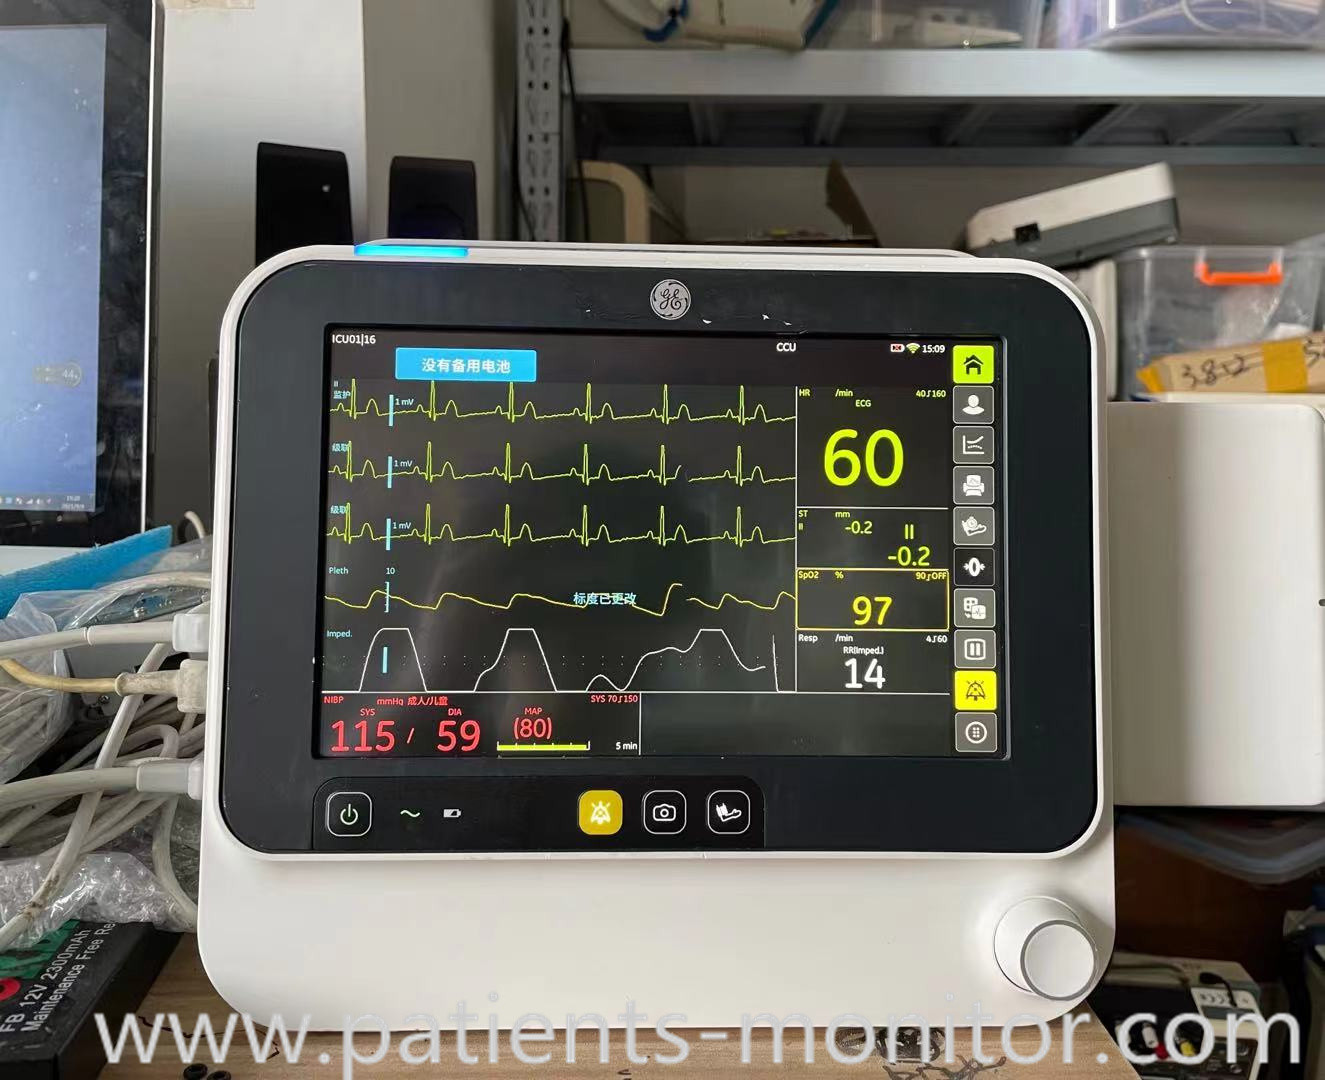 GE B105 usou o dispositivo do equipamento médico de monitor paciente para Hosiptal